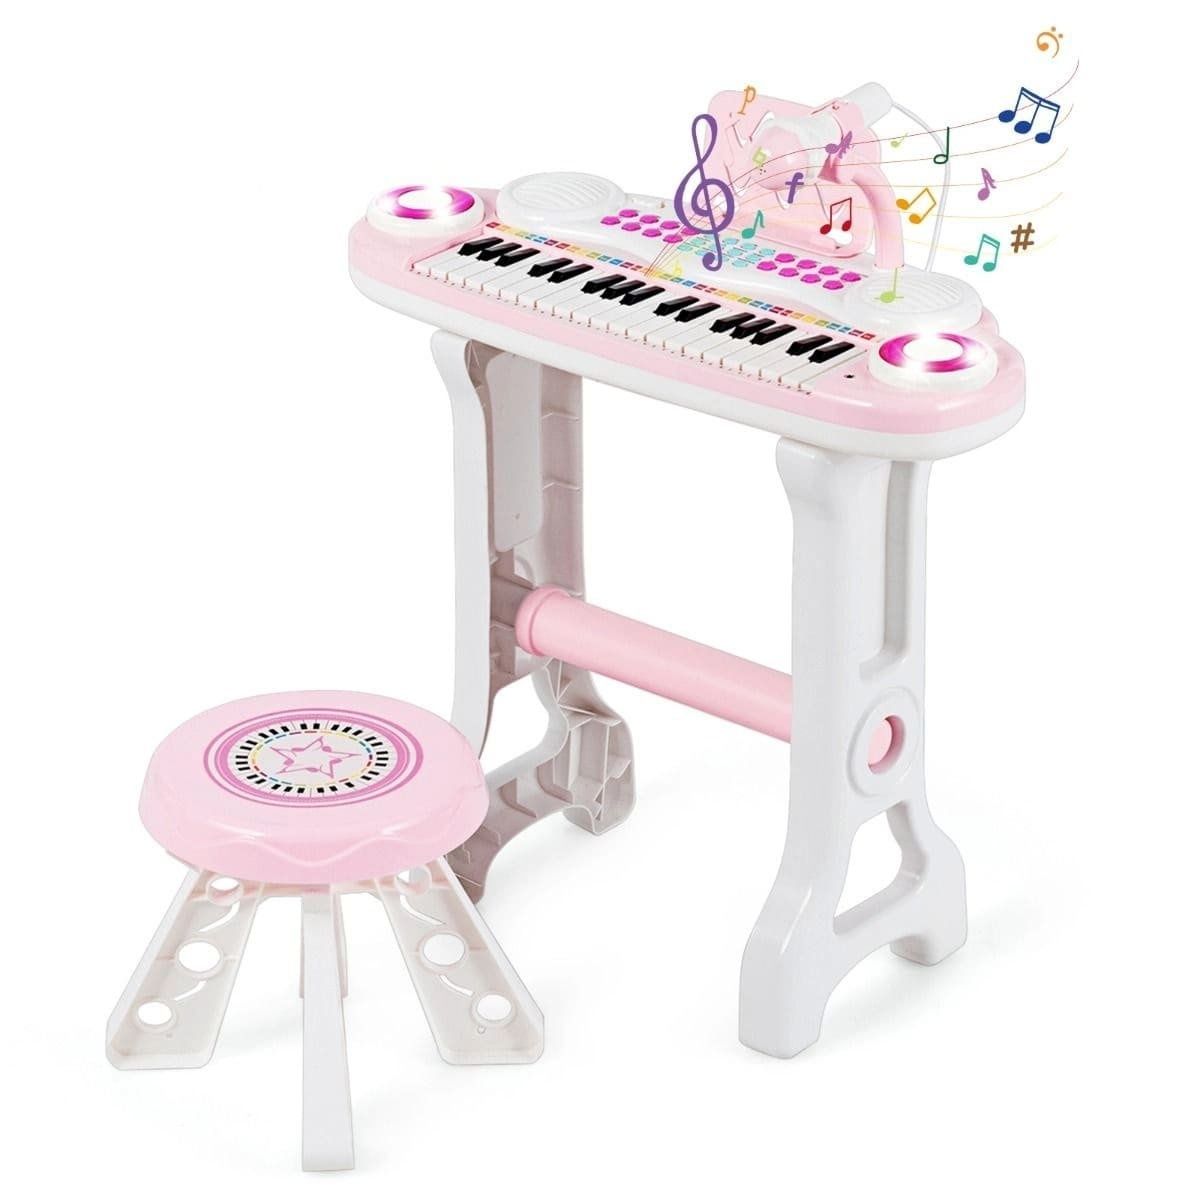 Wielofunkcyjne Zabawkowe Pianino Dla Dzieci 47 X 20 X 60cm